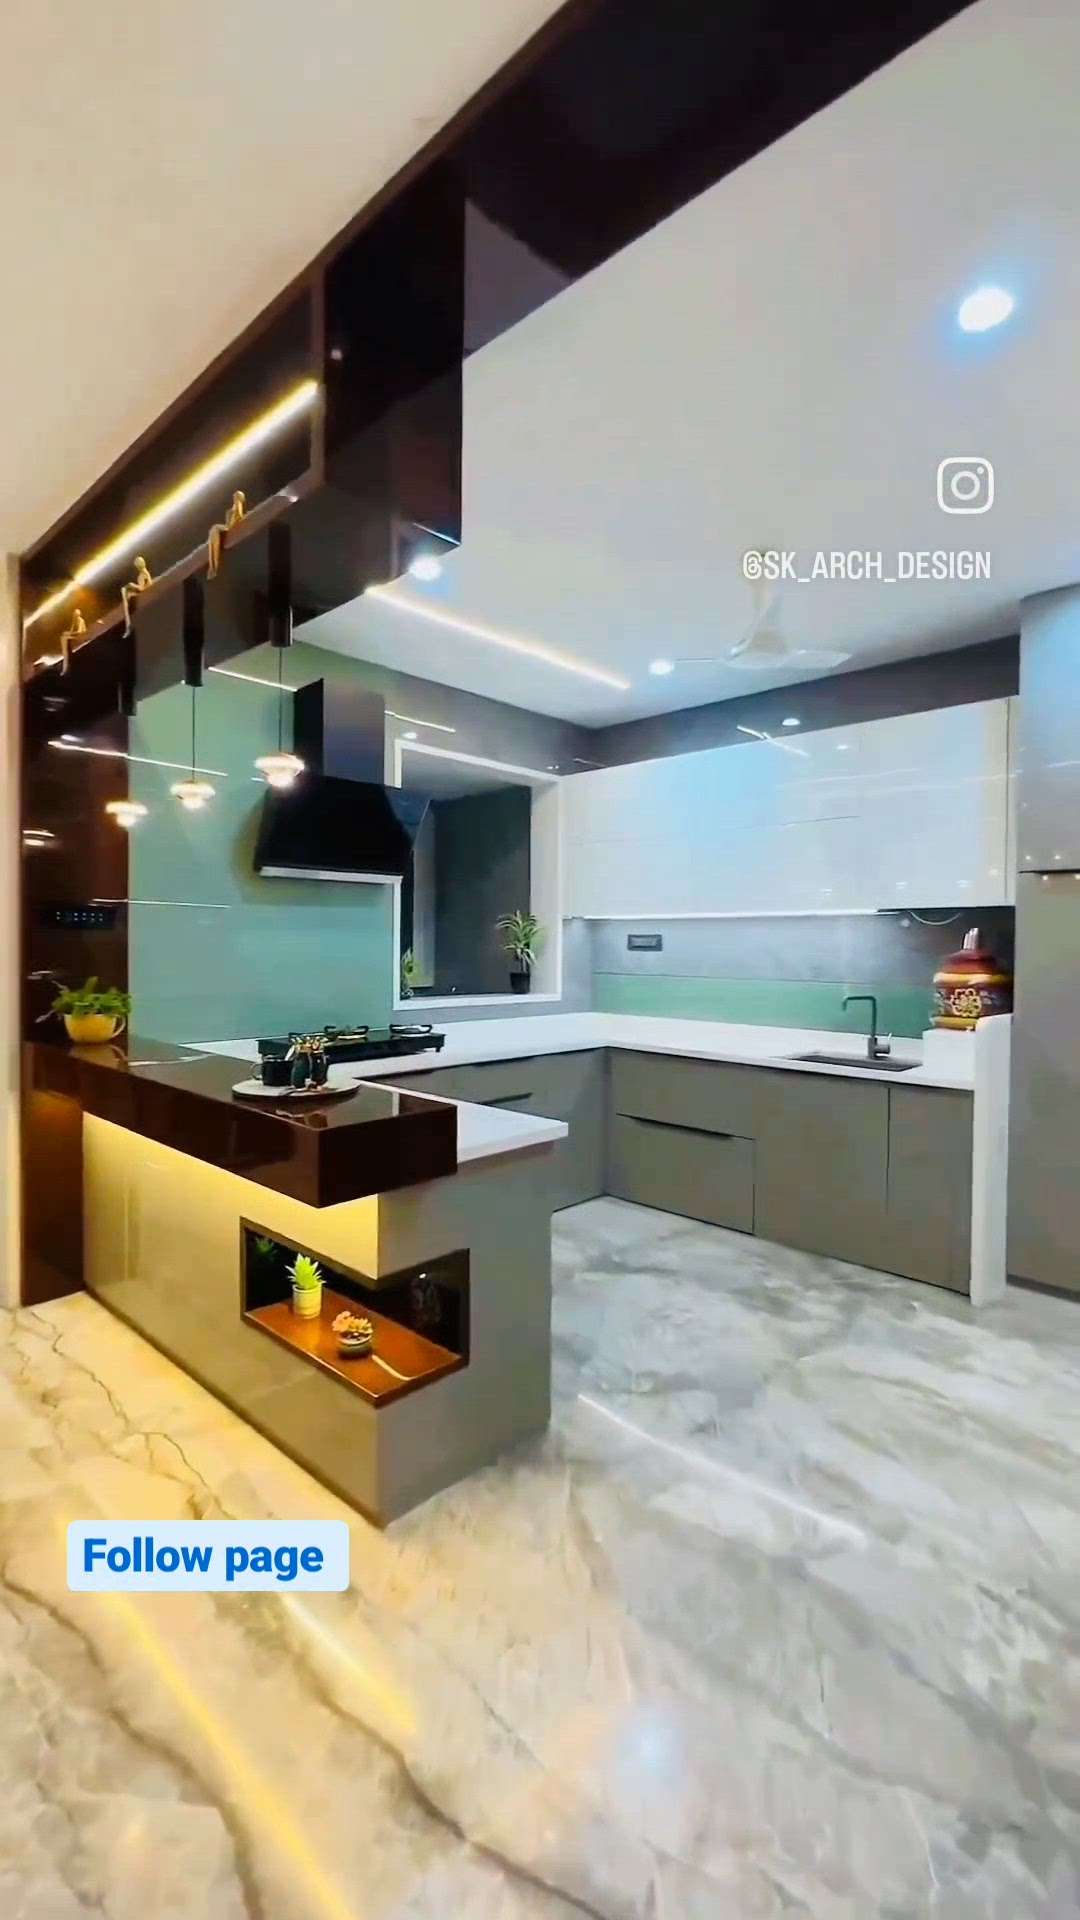 Modular kitchen design #luxurykitchen #ModularKitchen #OpenKitchnen #architecturedesigns #kichenspace